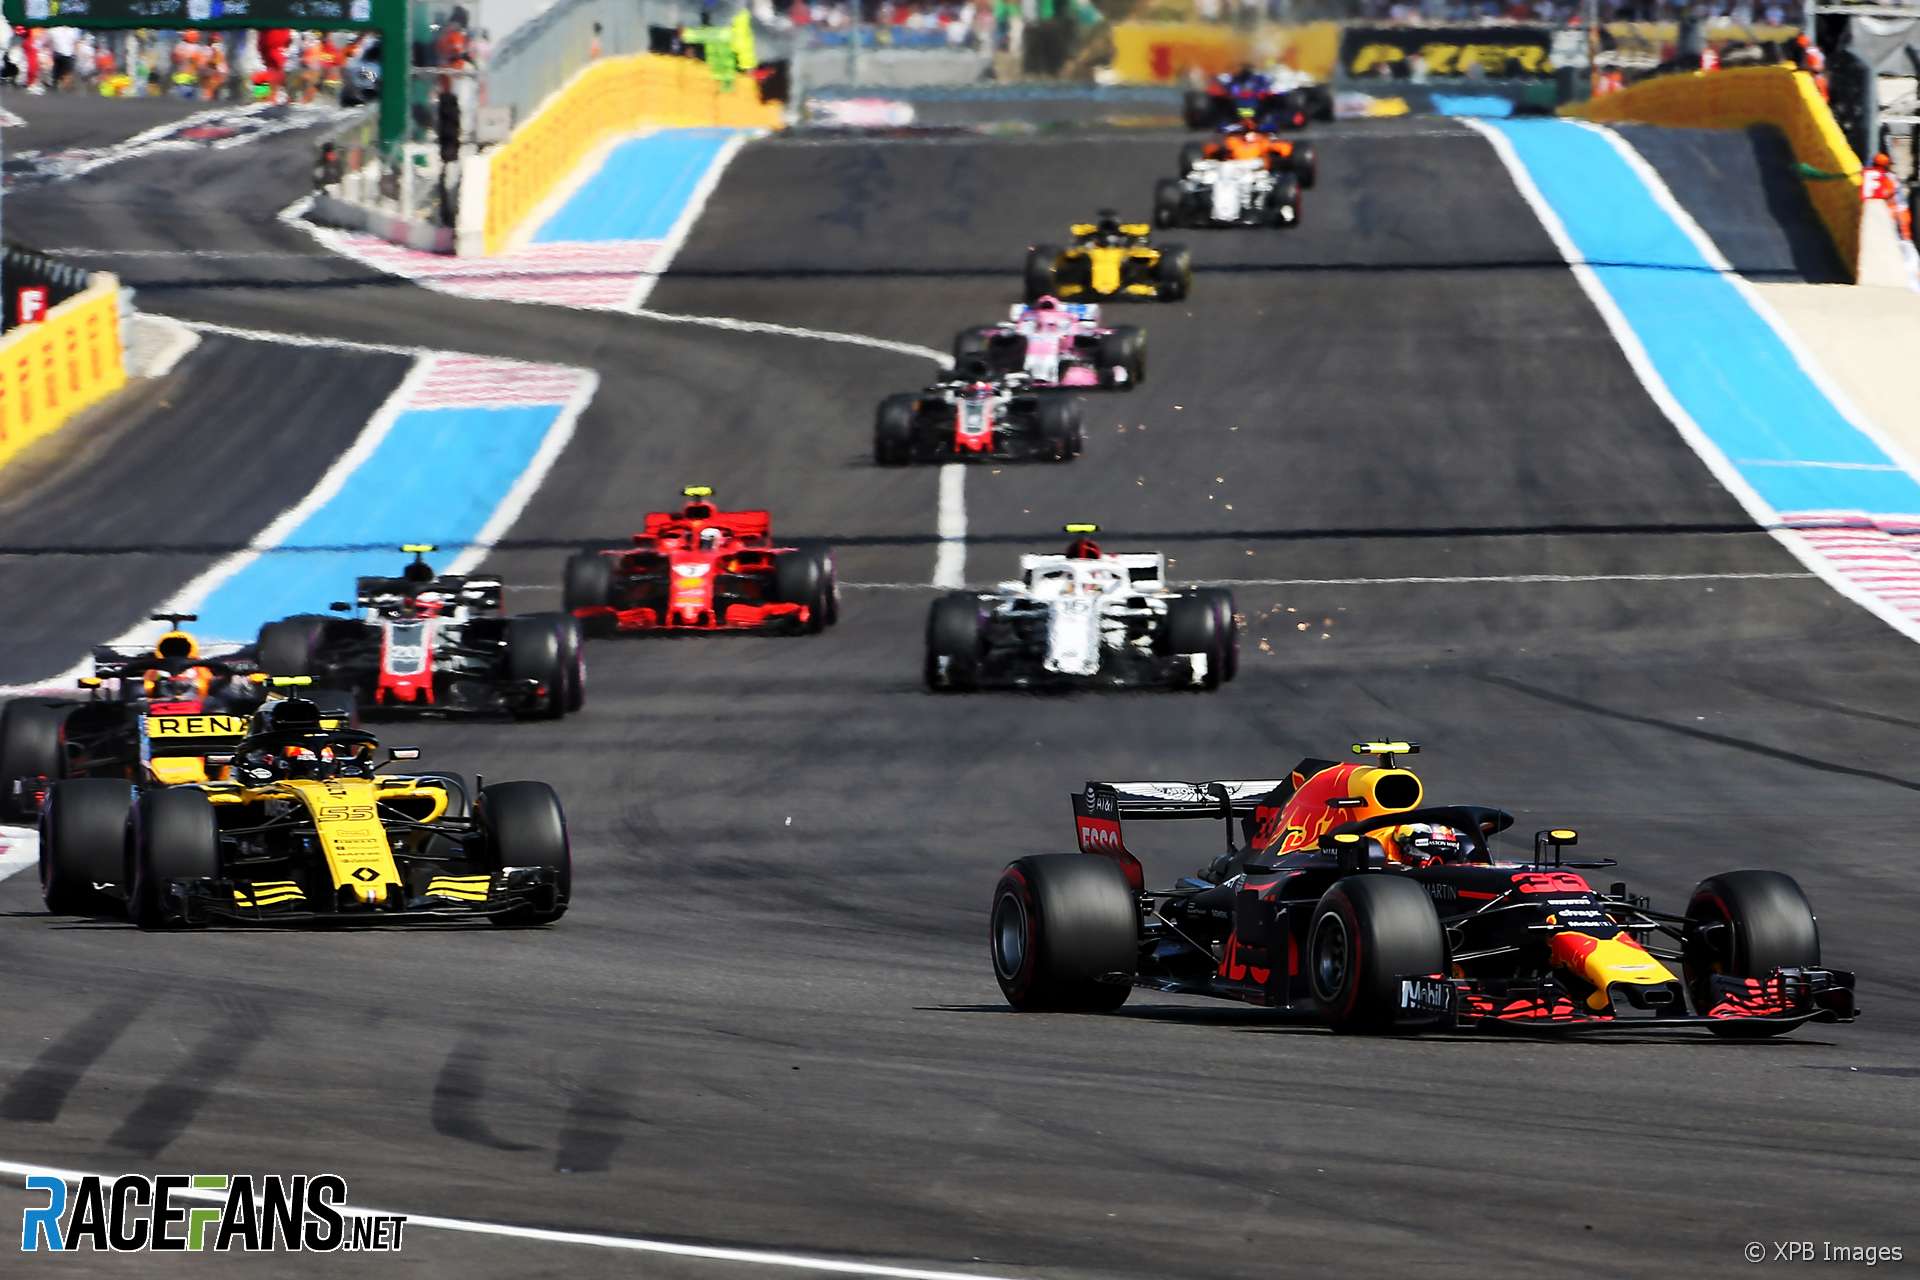 Max Verstappen, Red Bull, Paul Ricard, 2018